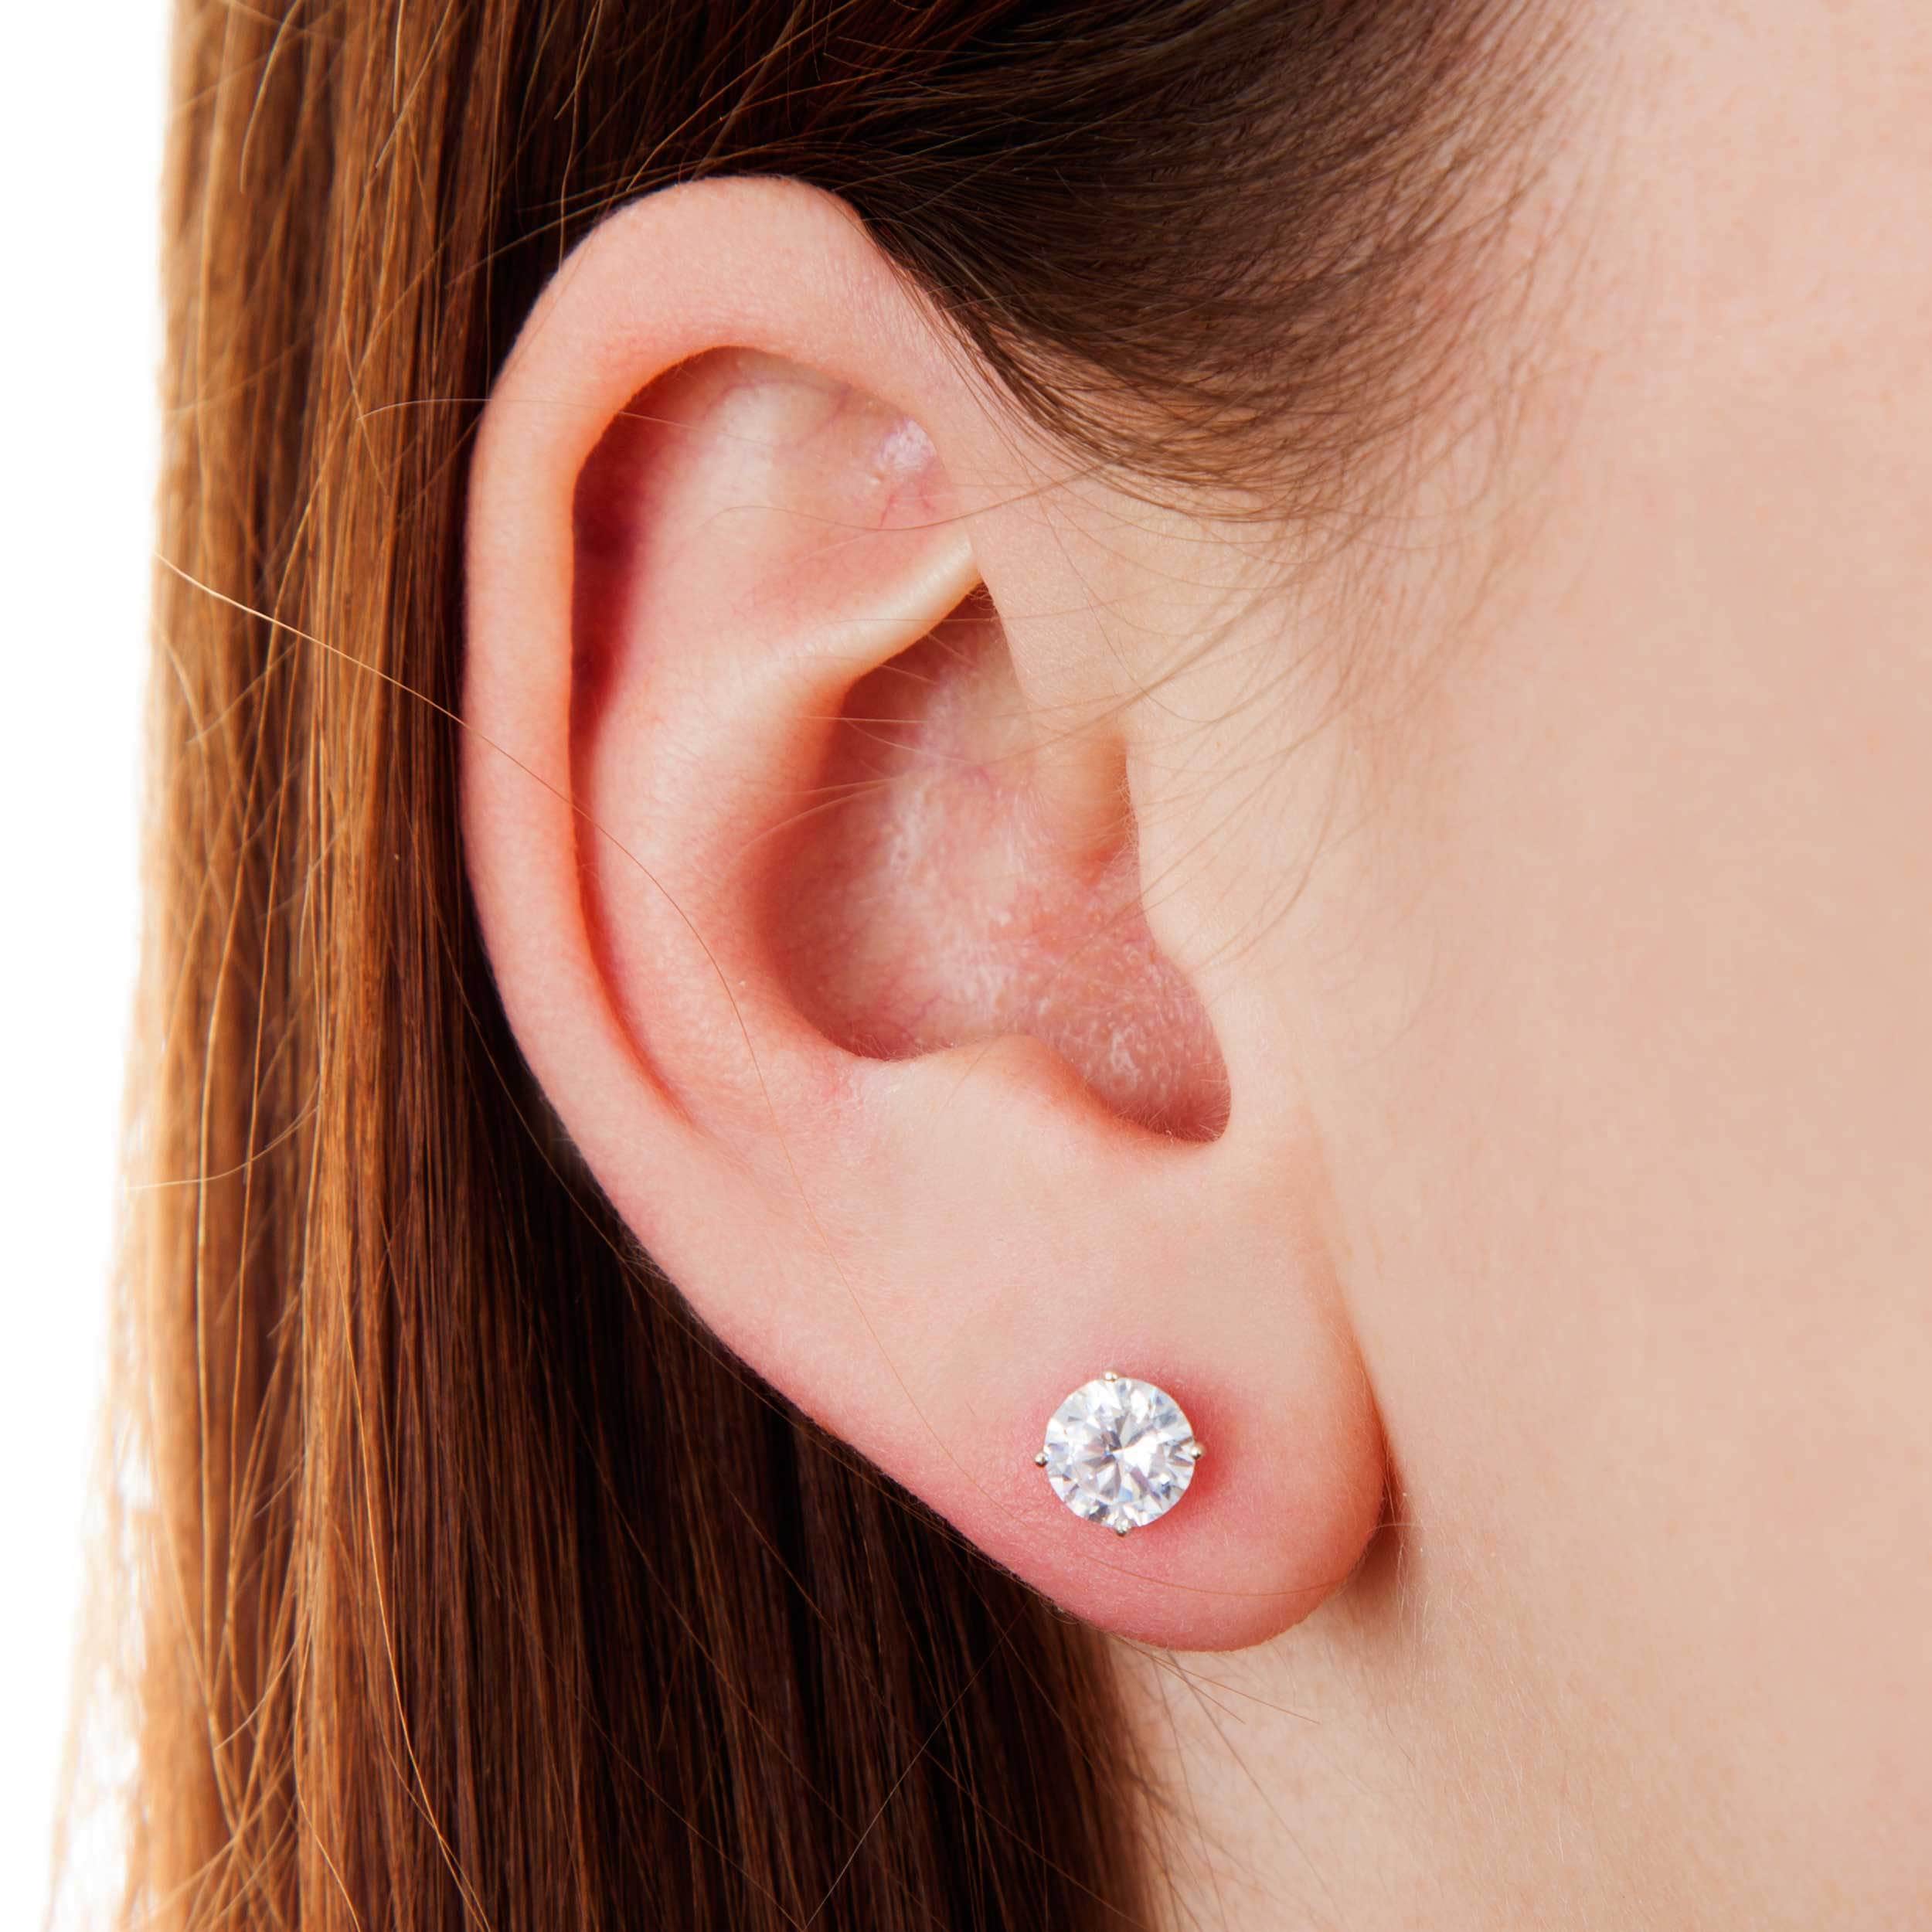 6mm Simple Zircon Stud Earrings Silver Earrings Jewelry For Women